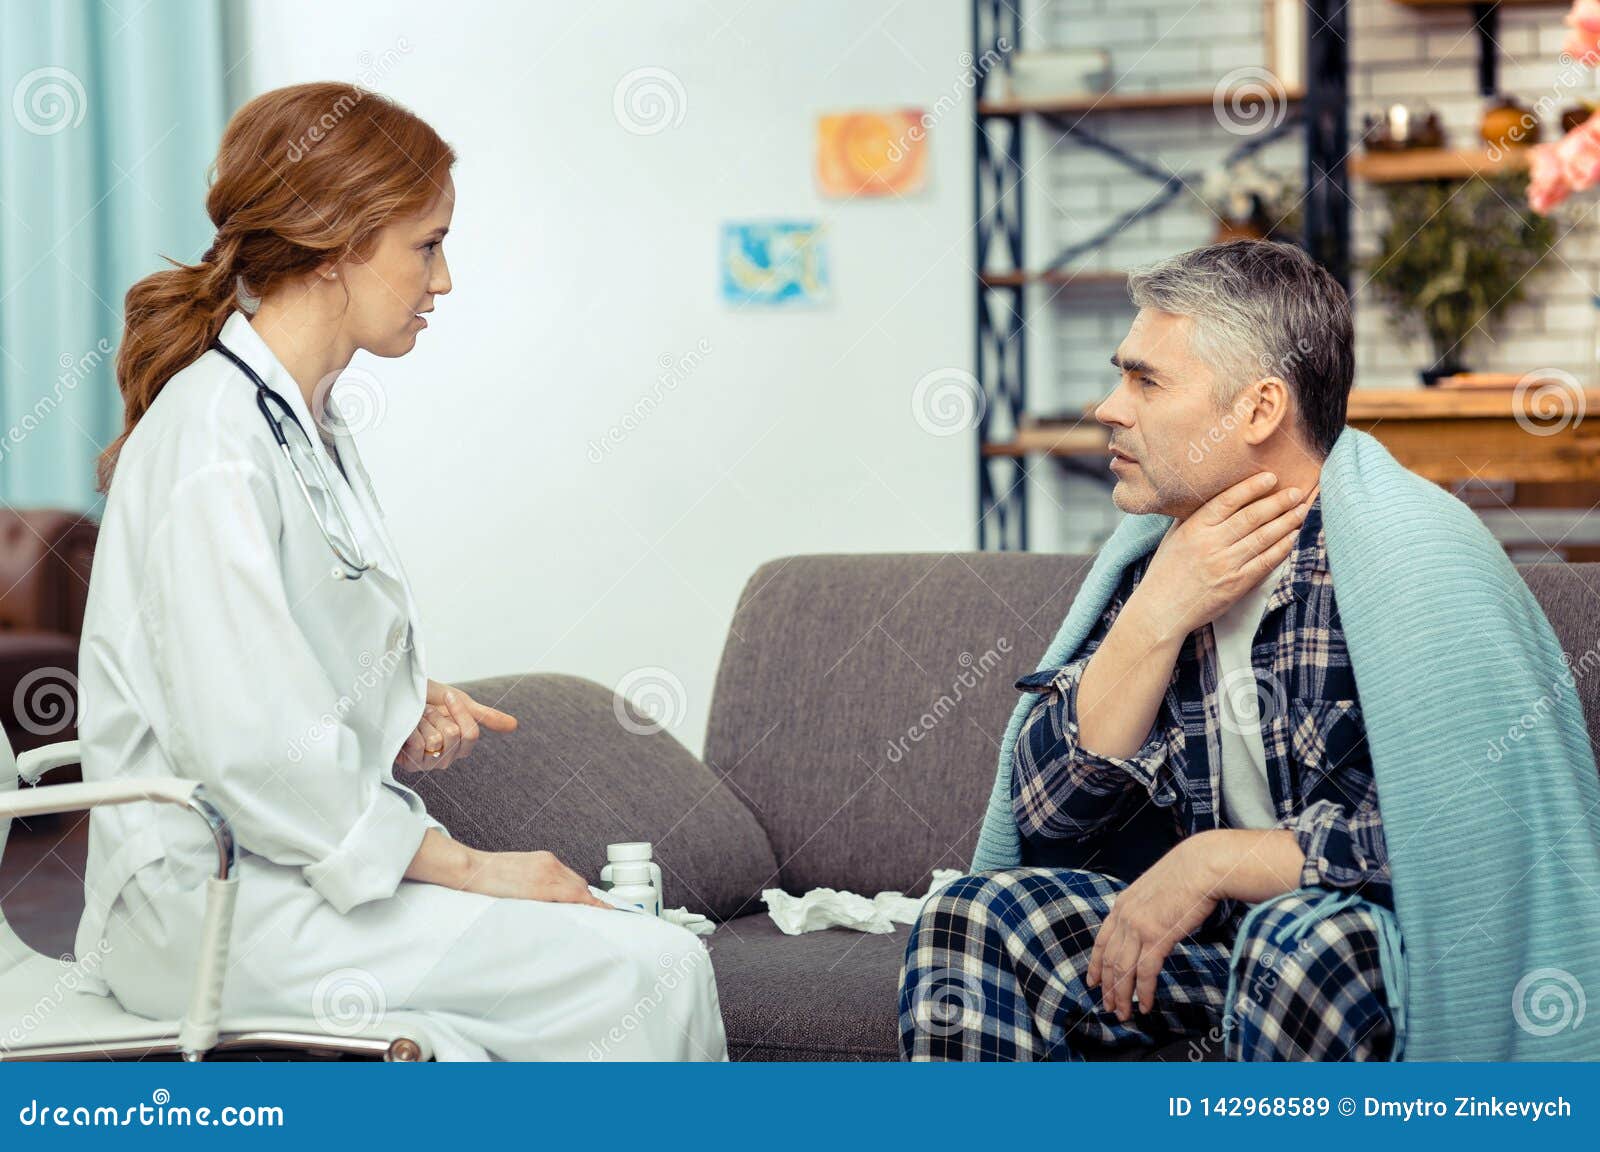 Понравился пациент. Человек нервничает и трогает шею. Женщина врач без лица щупает шейный отдел позвоночника пациента фото.